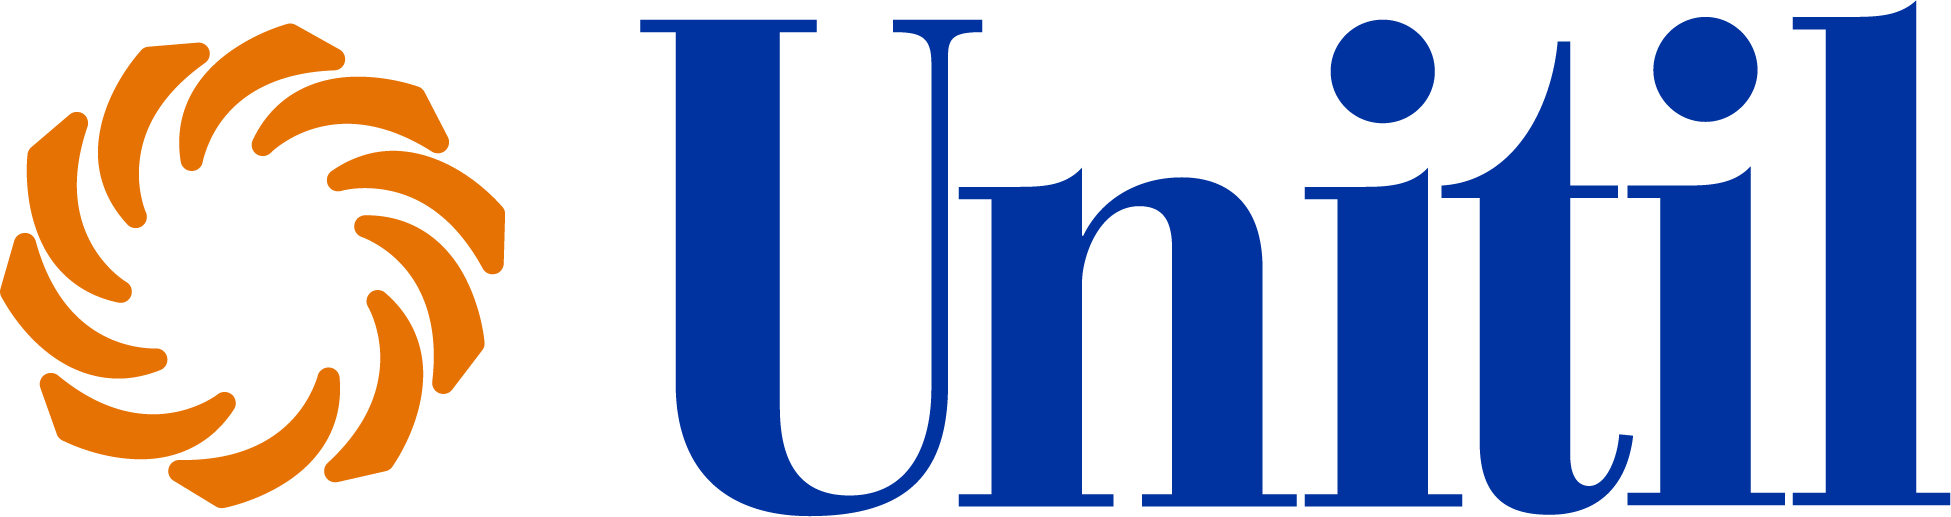 Unitil ConnectedSolutions logo